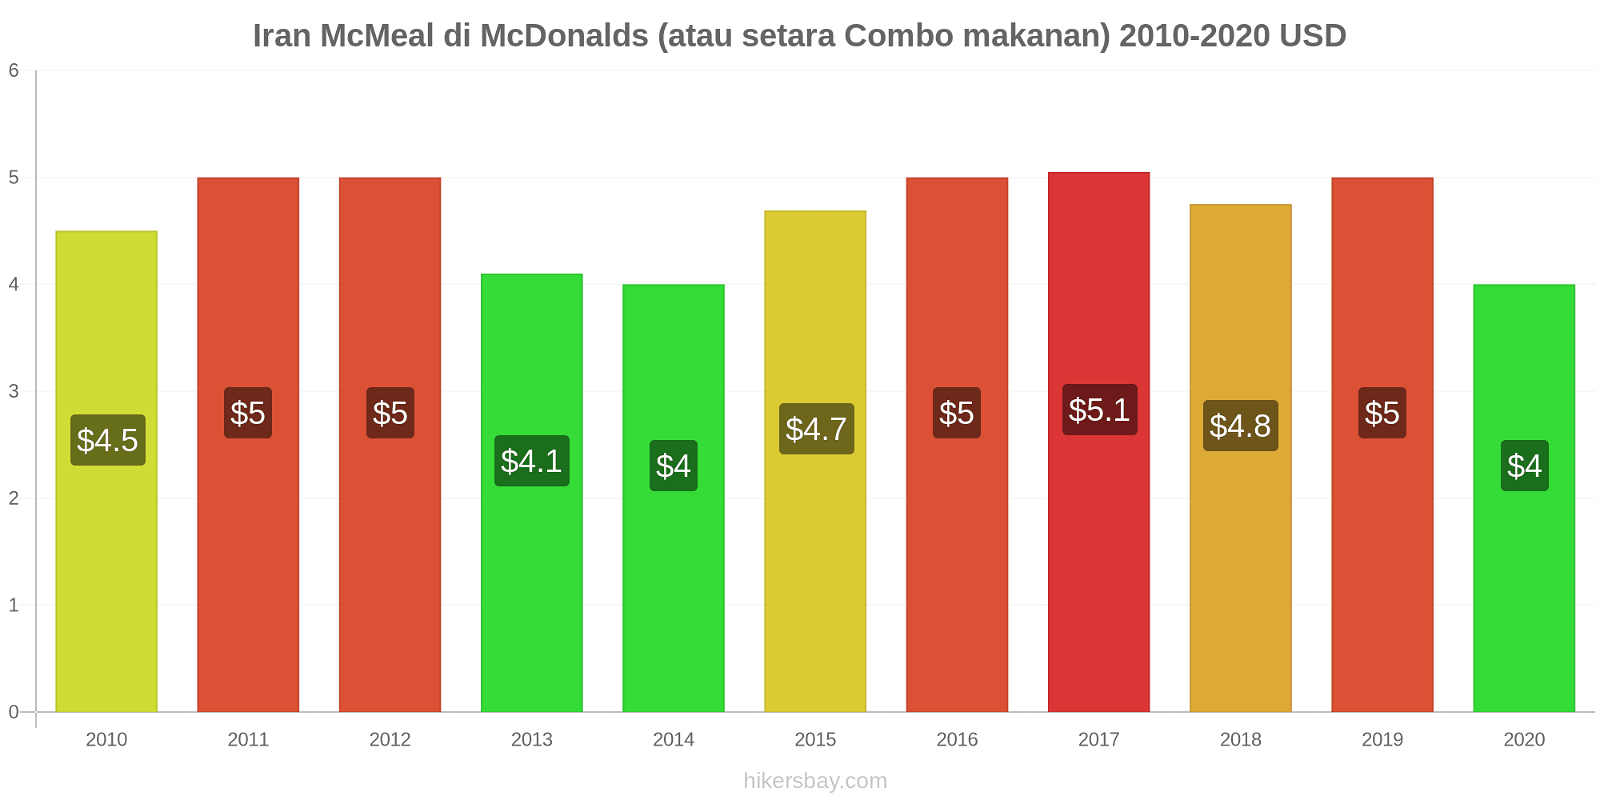 Iran perubahan harga McMeal di McDonalds (atau setara Combo makanan) hikersbay.com